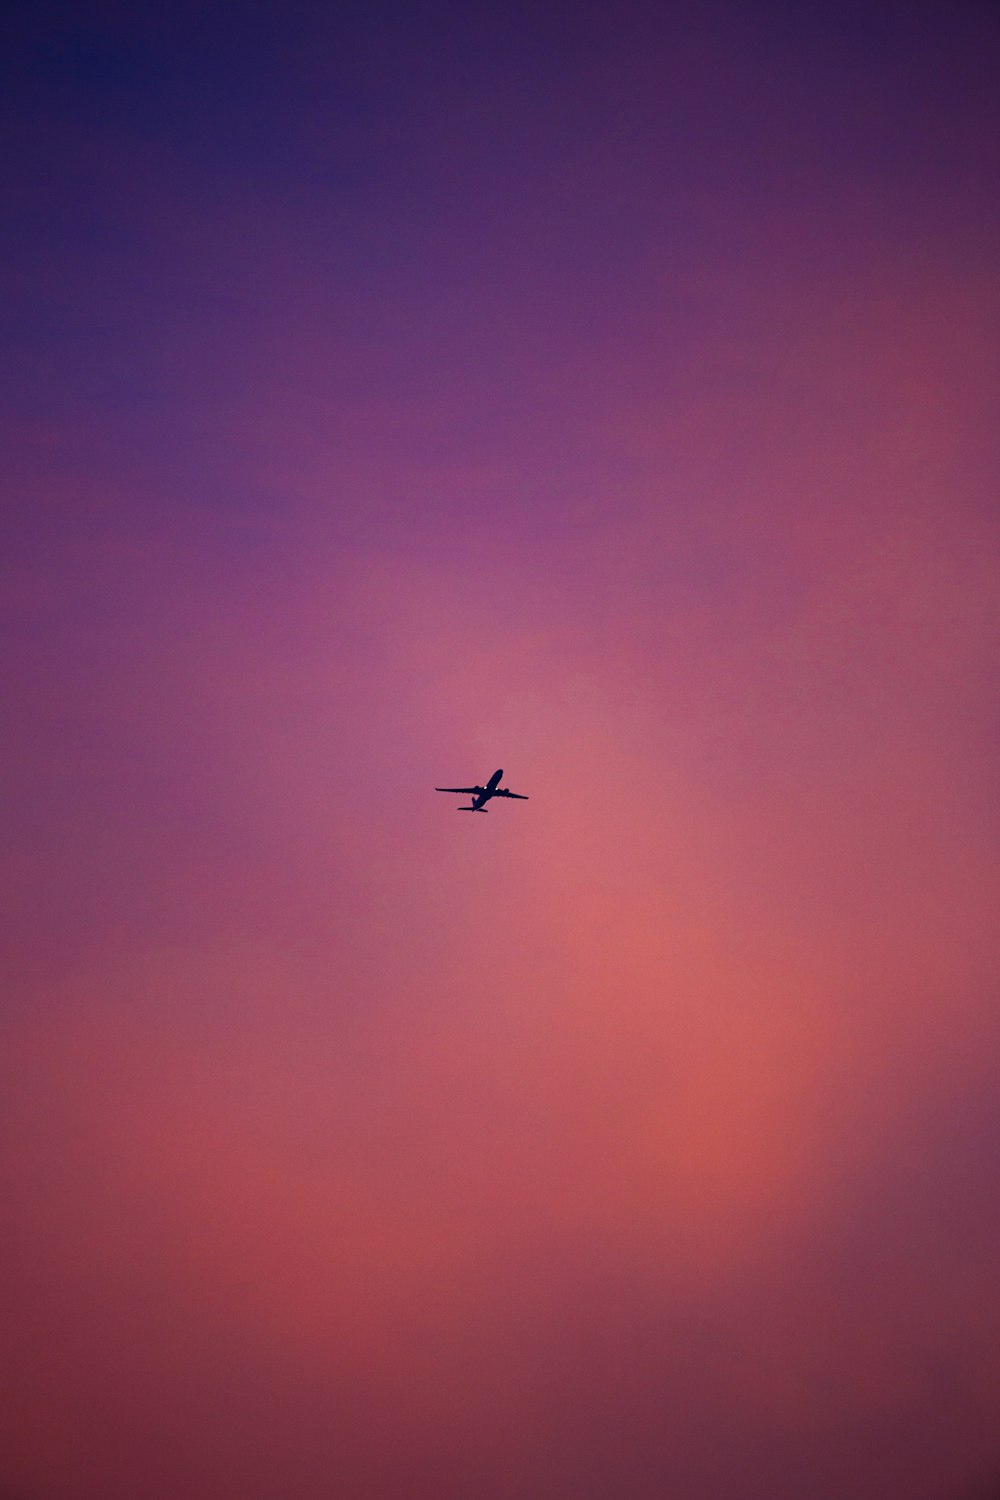 Flugzeug in der Luft während des Tages